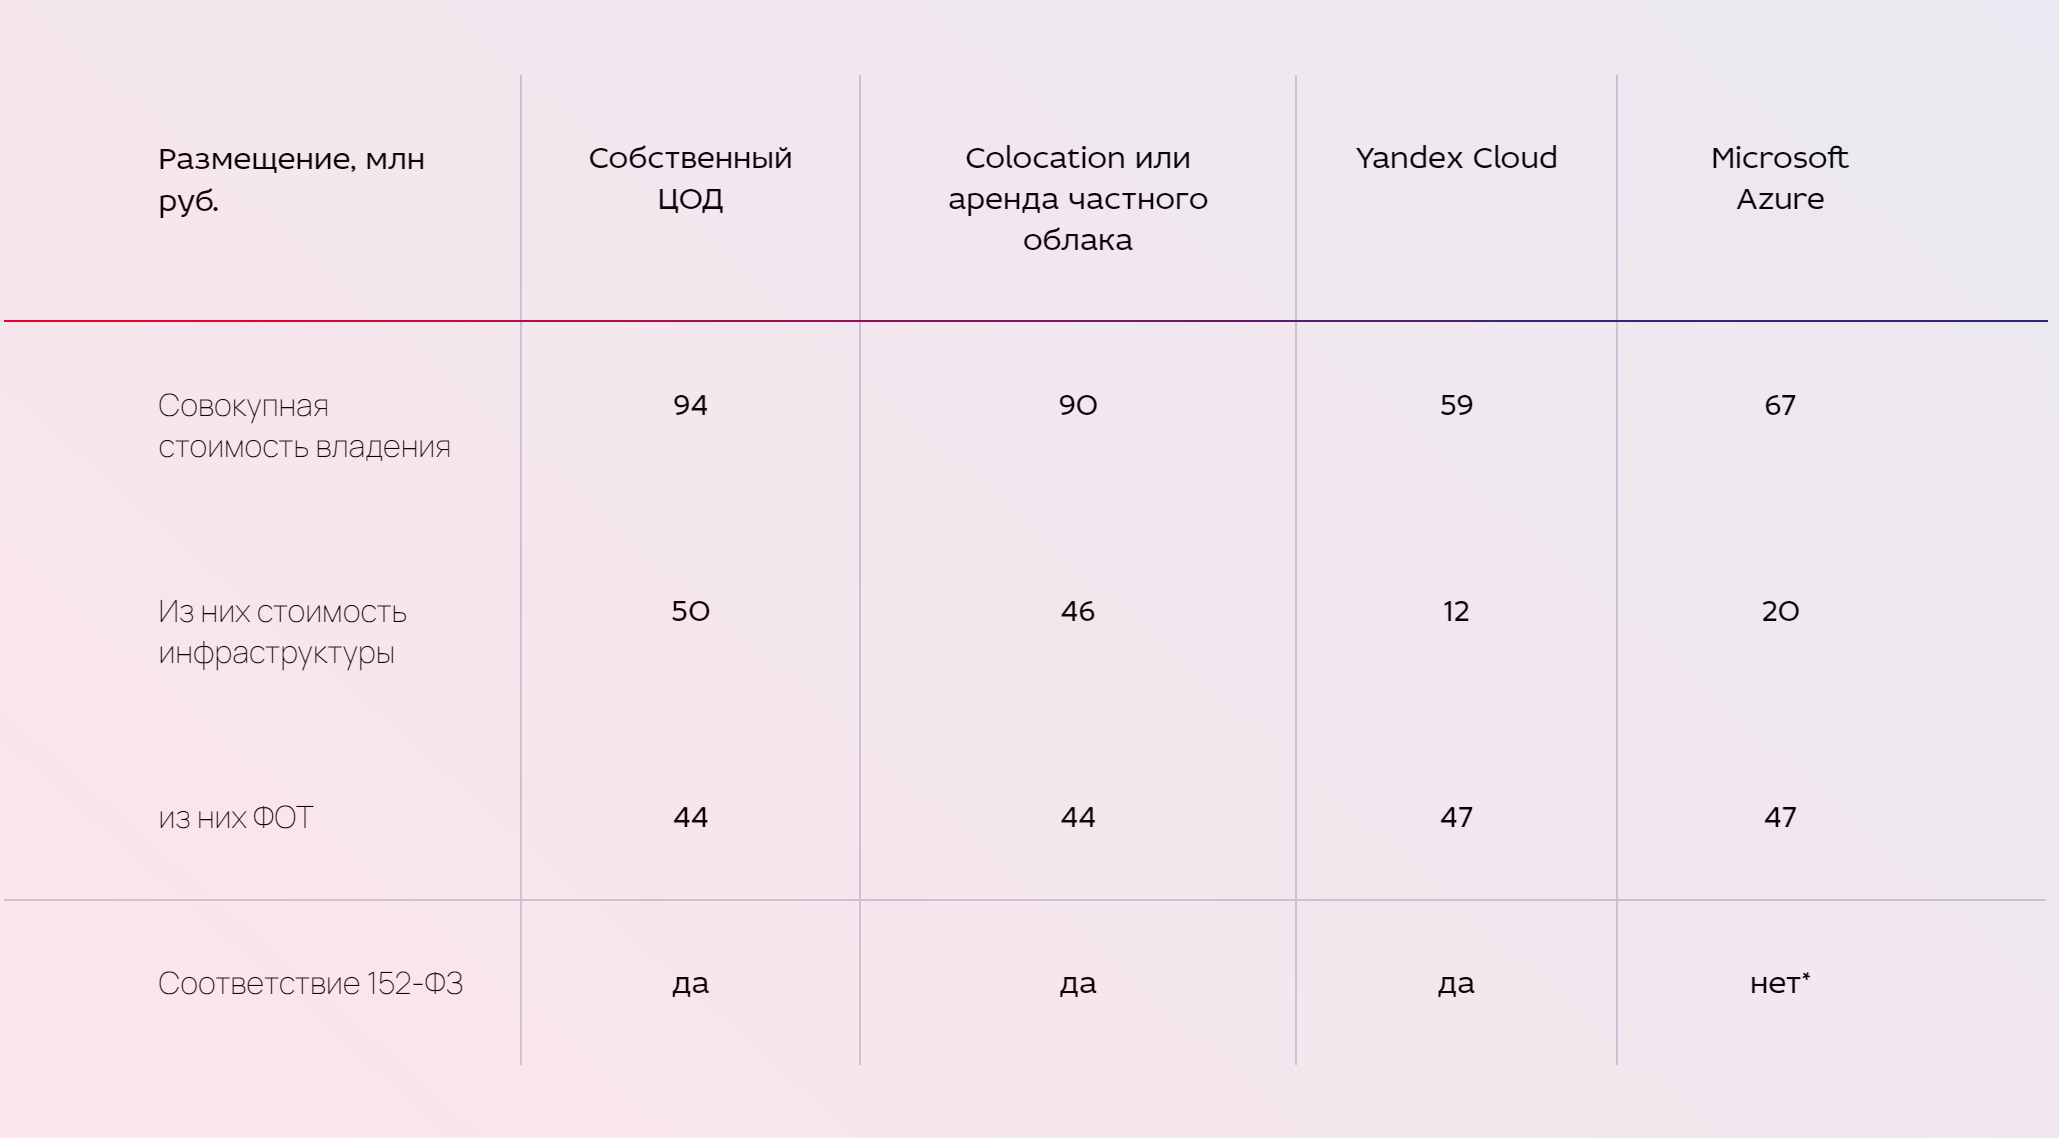 Таблица из совместного пресс-релиза ЕАЕ-Консалт и Yandex Cloud